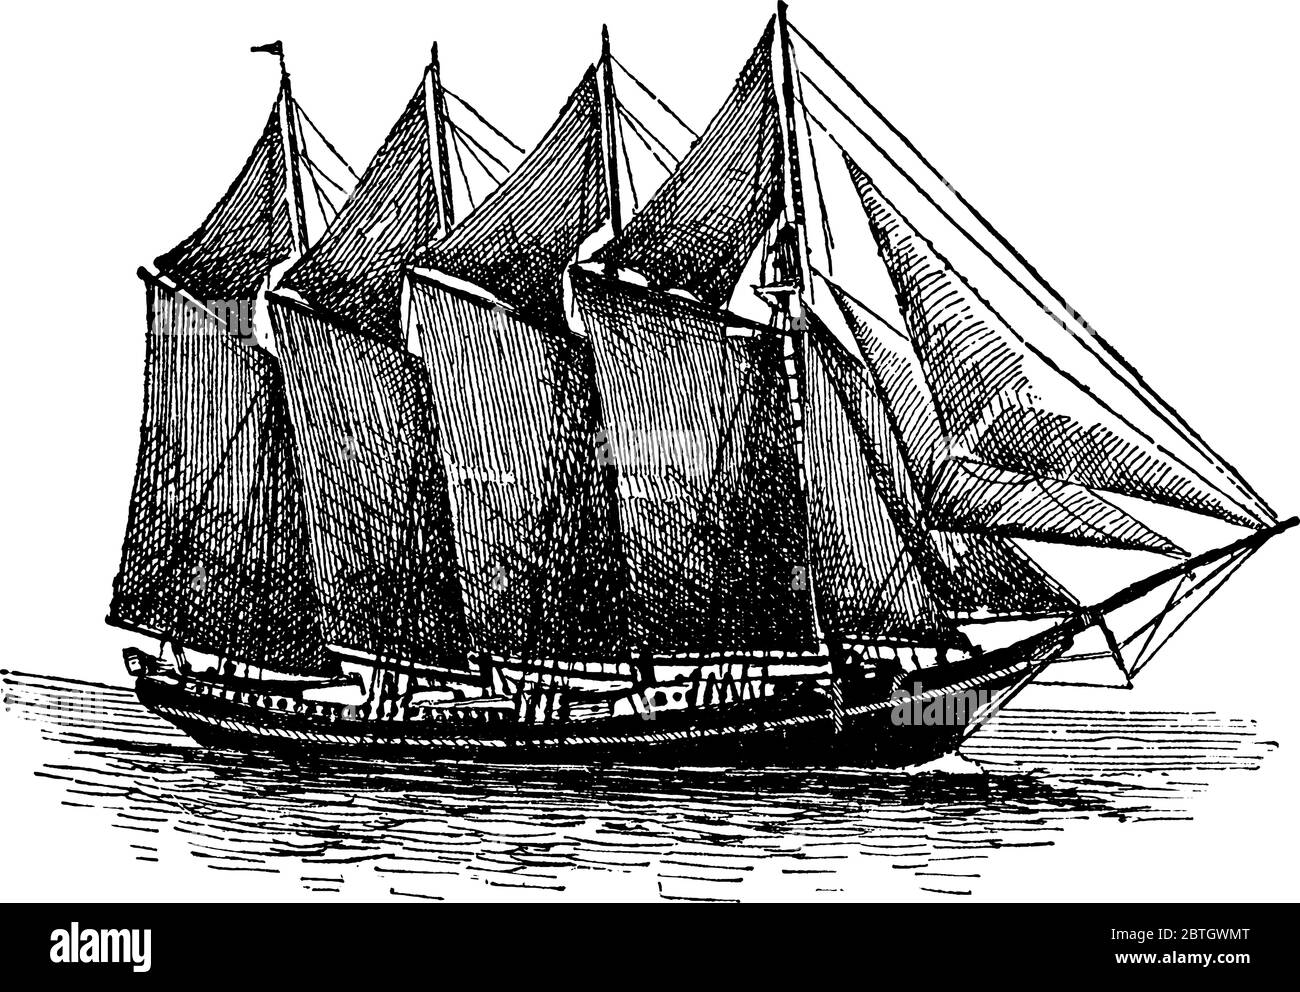 Une goélette à quatre mâts, un type de voilier qui utilise des voiles avant et arrière, un dessin de ligne vintage ou une illustration de gravure. Illustration de Vecteur